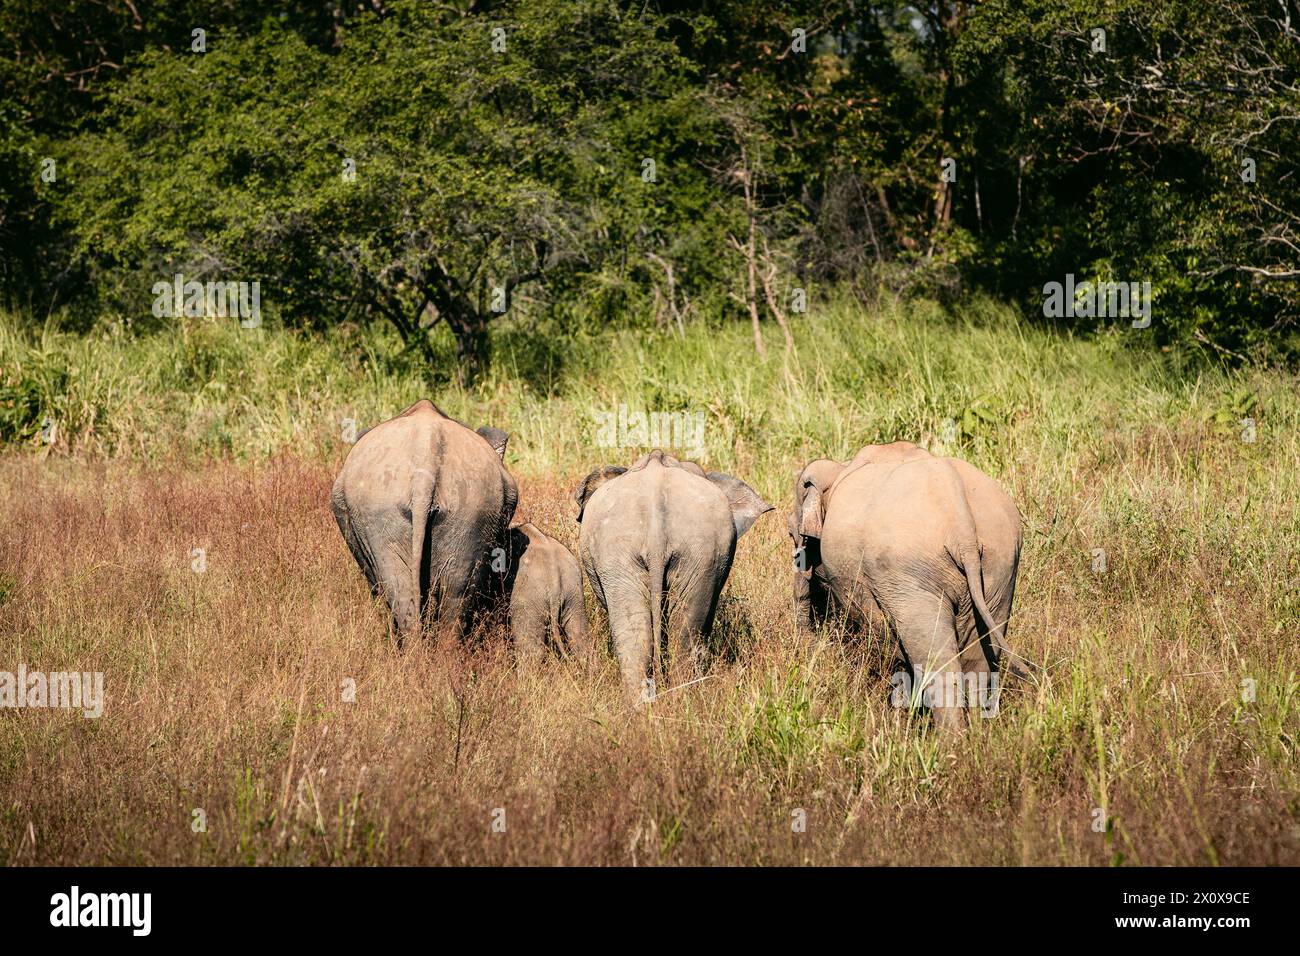 Vue arrière du troupeau d'éléphants dans la nature sauvage contre paysage verdoyant. Animaux sauvages au Sri Lanka. Banque D'Images